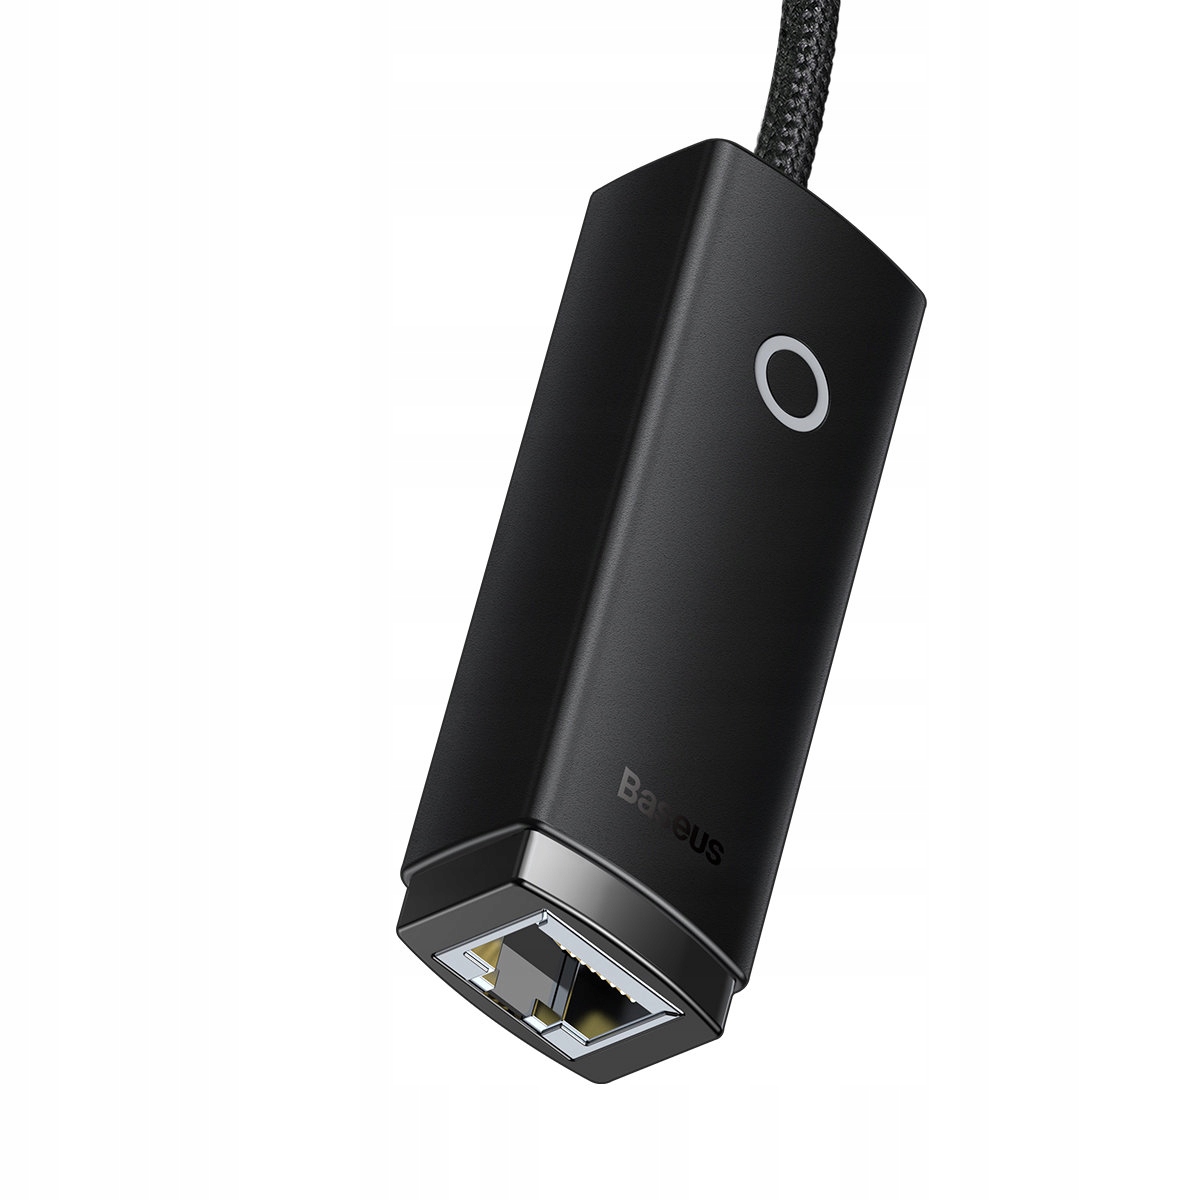 Baseus USB Ethernet Adapter 1000Mbps GIGABIT Lite Series: Buy Baseus USB Ethernet Adapter 1000Mbps Best Price in Sri Lanka | ido.lk